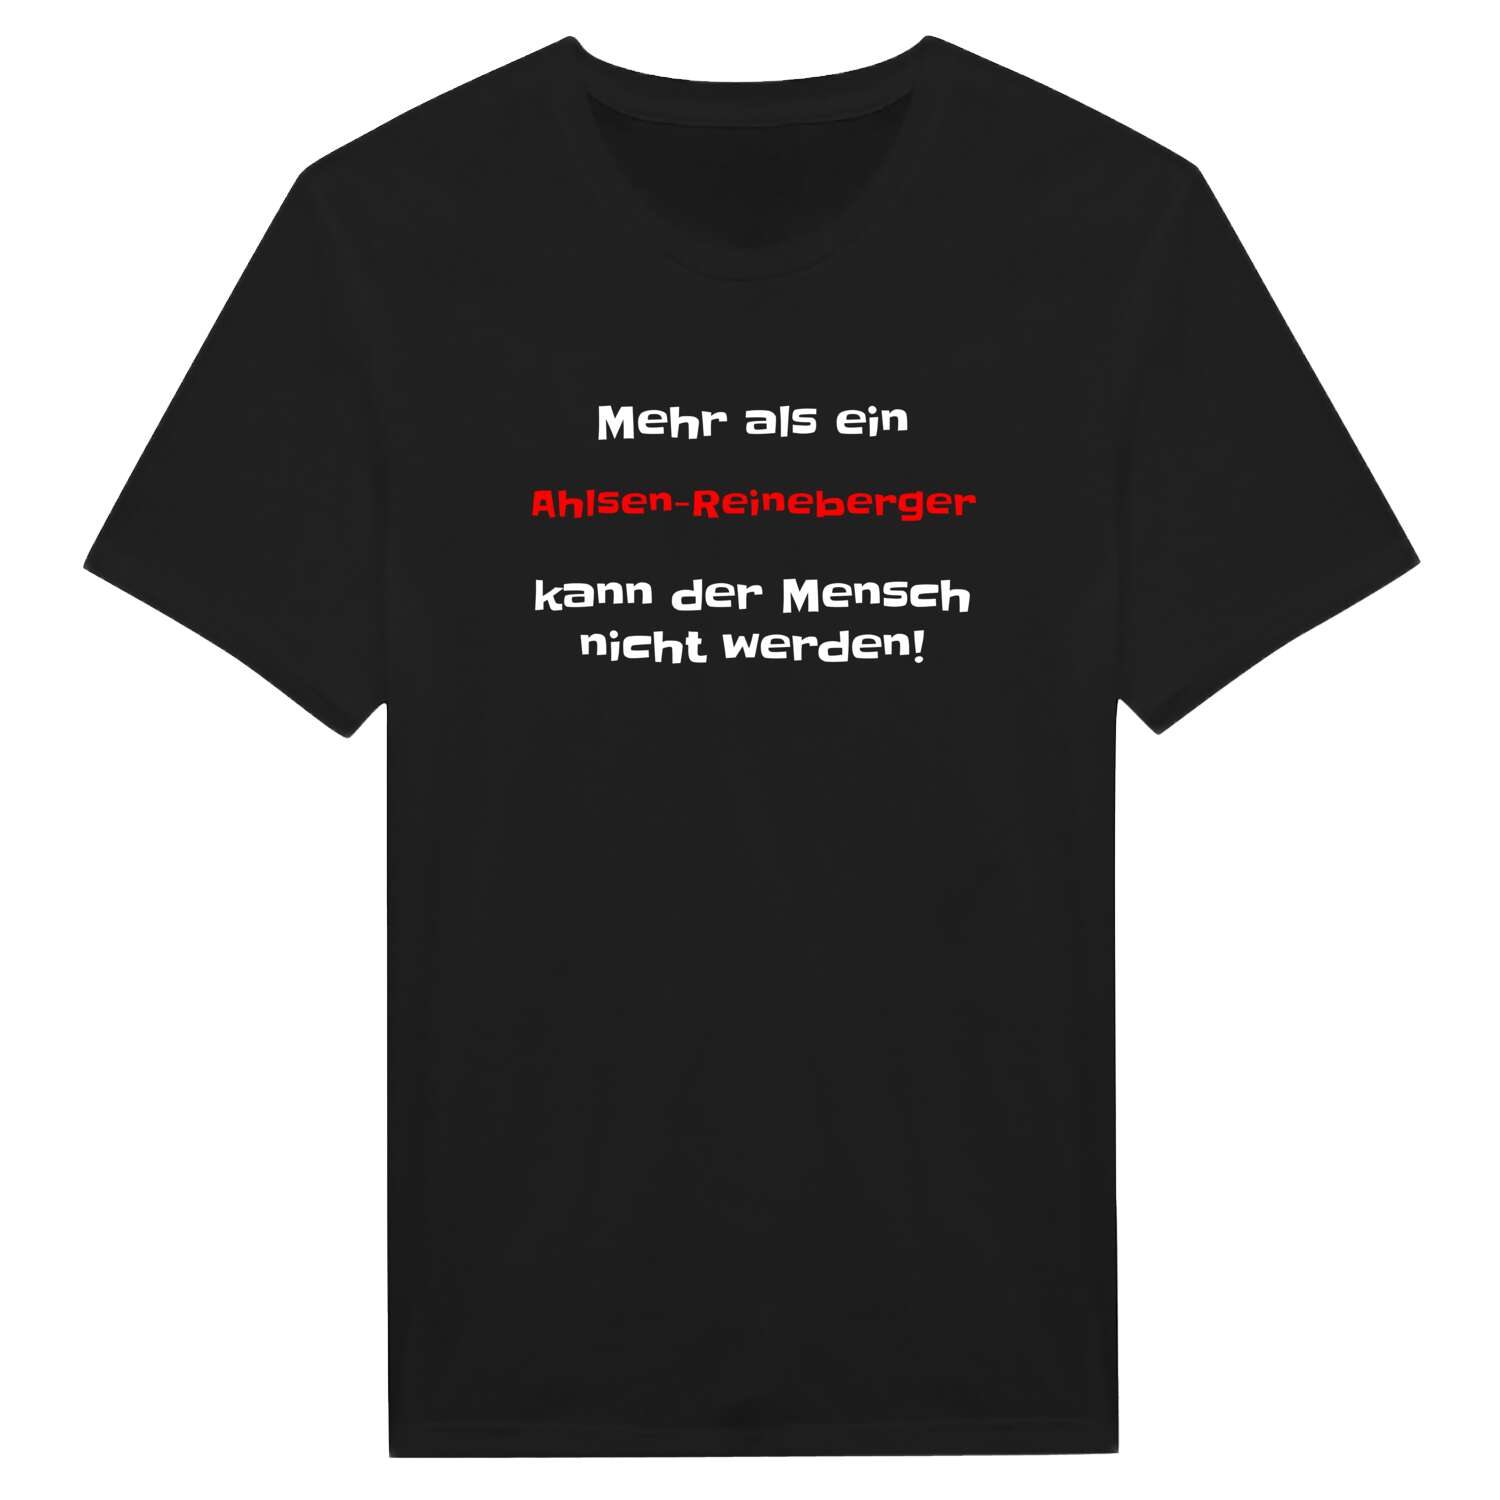 Ahlsen-Reineberg T-Shirt »Mehr als ein«